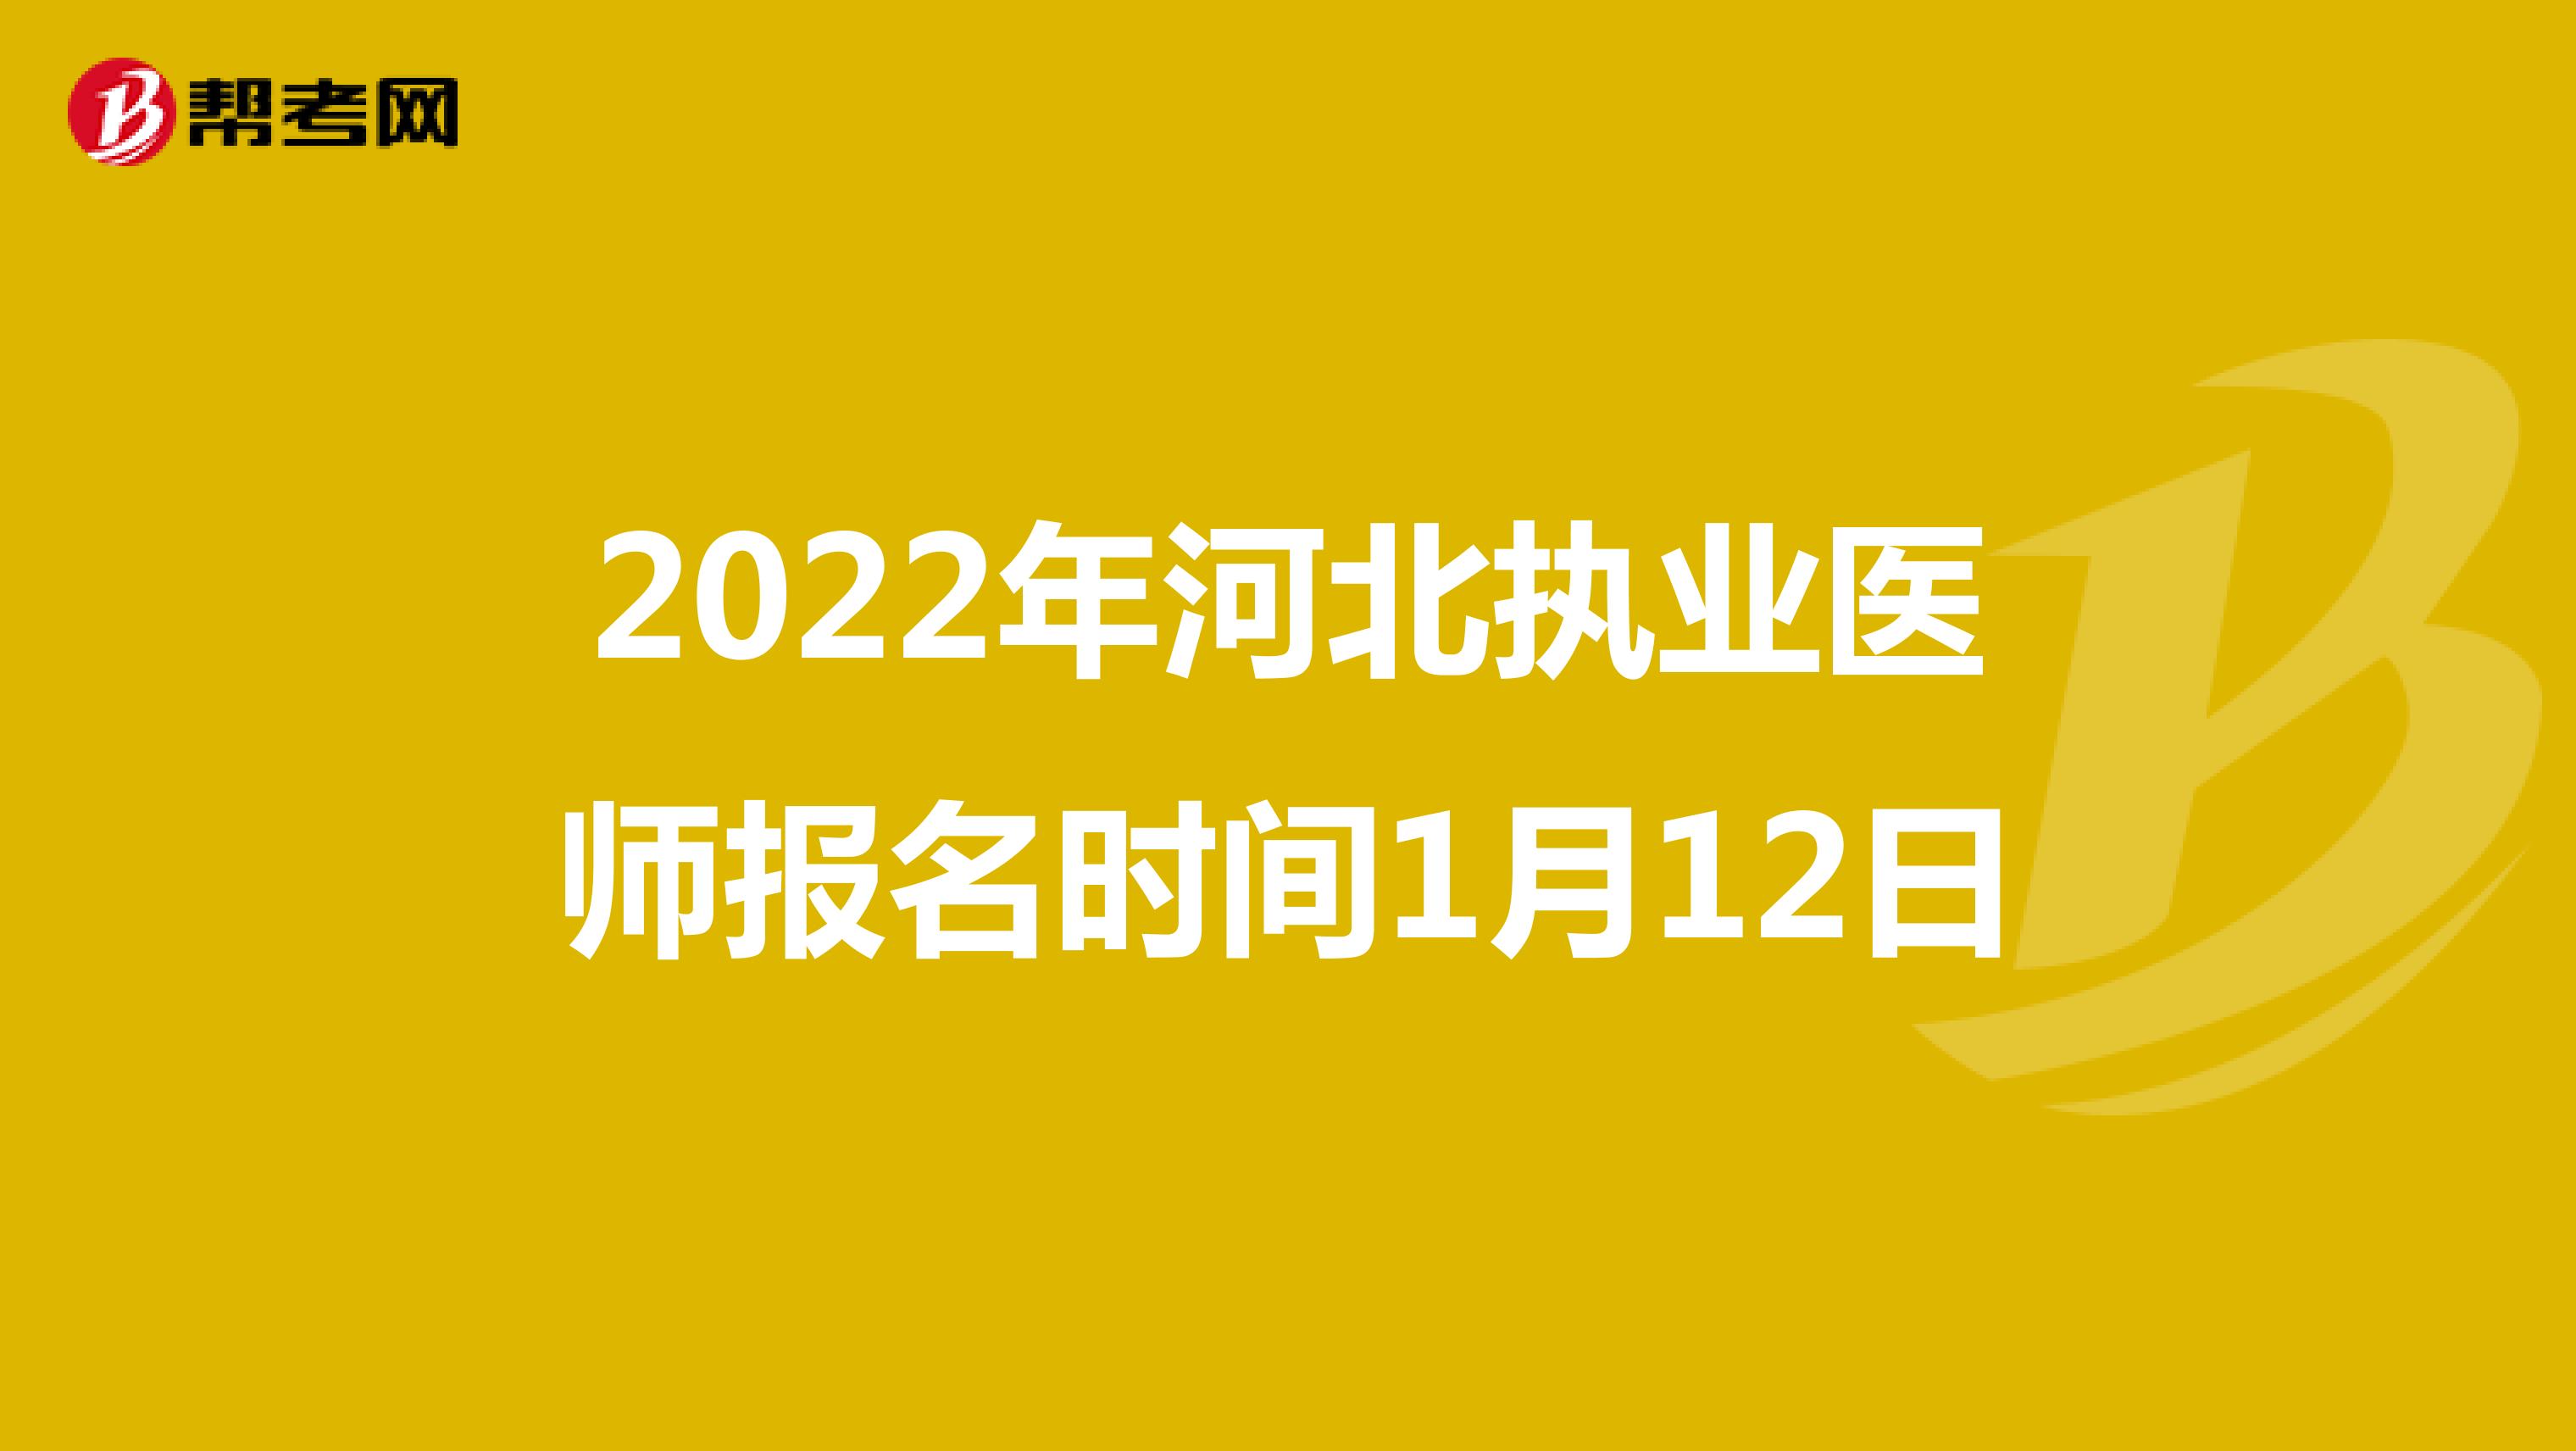 2022年河北执业医师报名时间1月12日